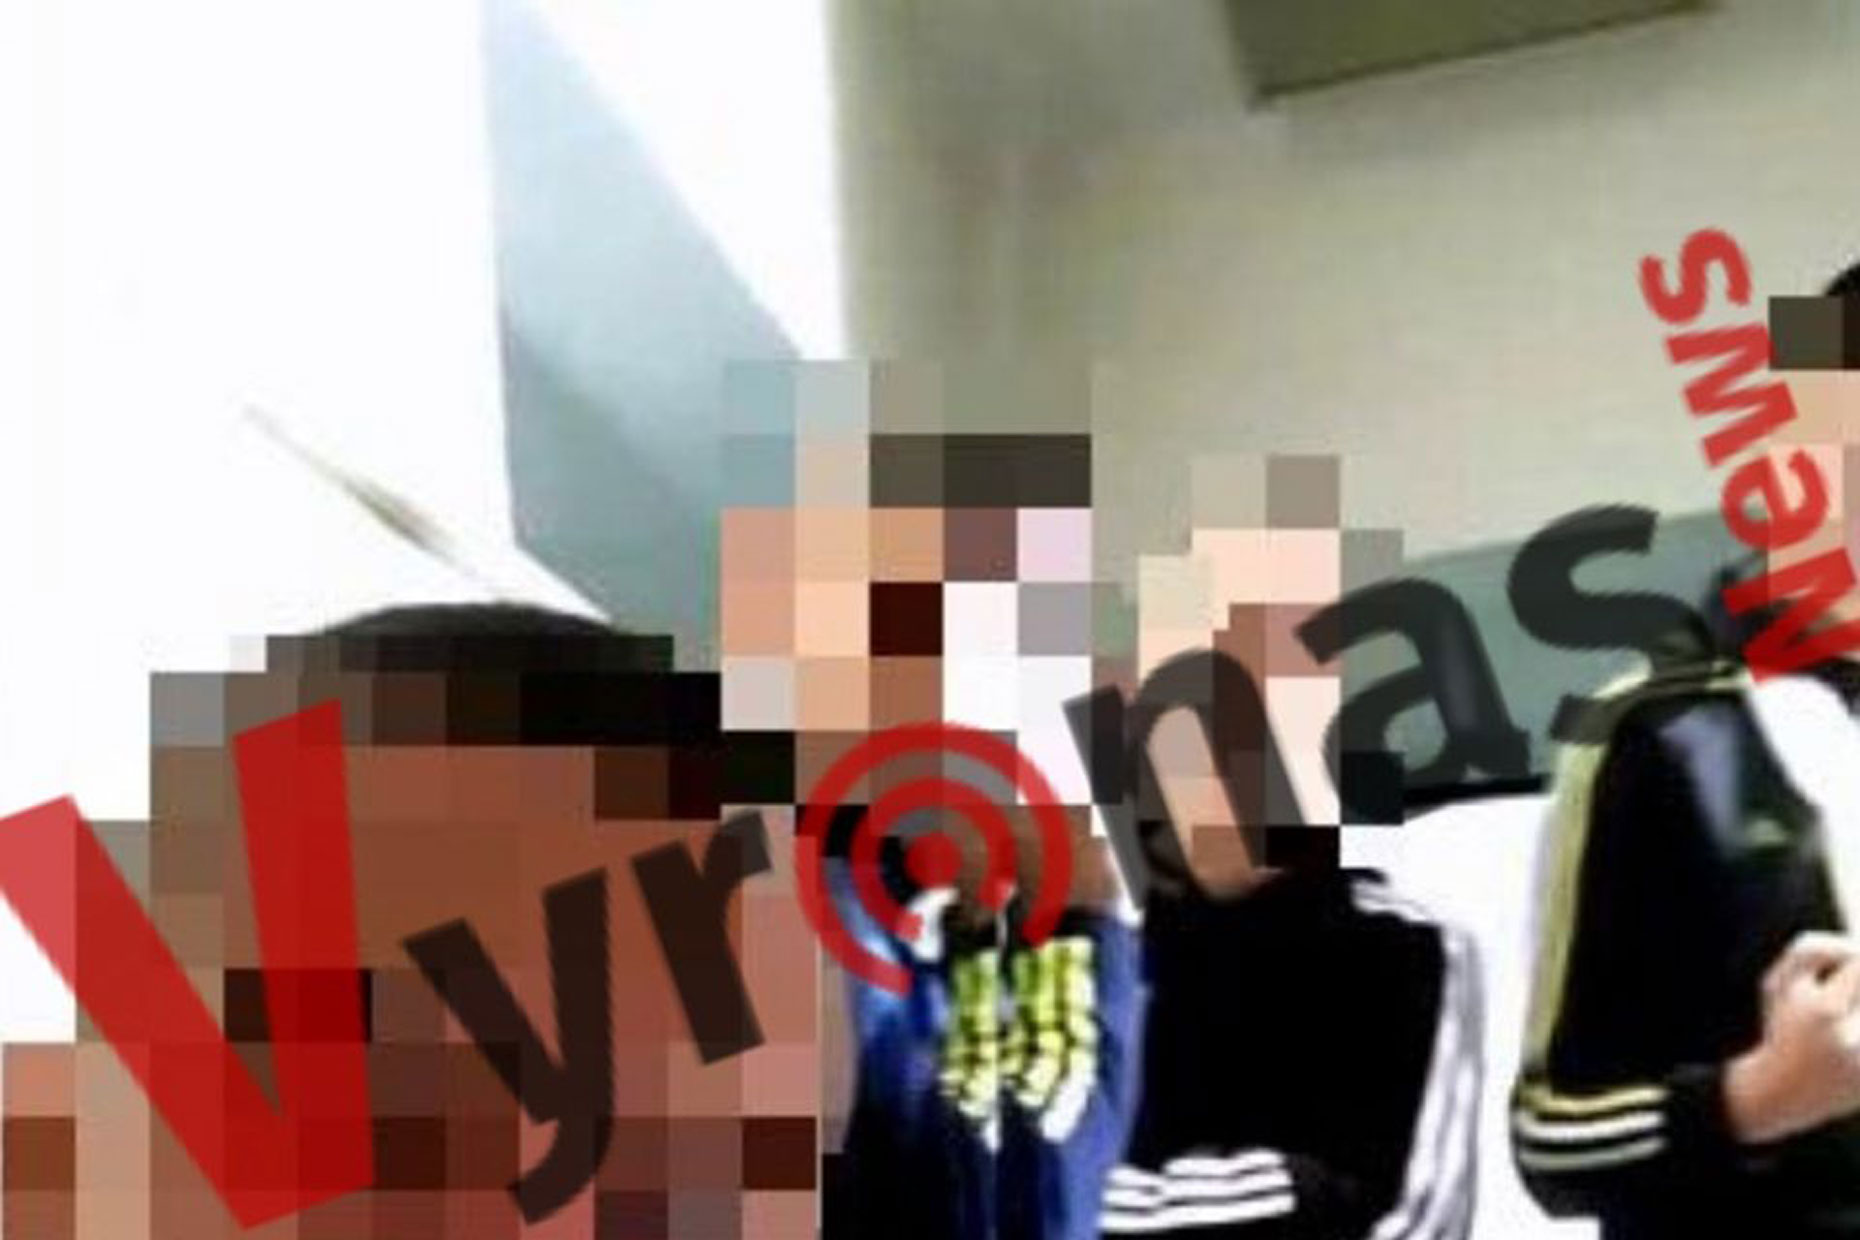 Βύρωνας: Αμετανόητοι οι δράστες του ξυλοδαρμού του 17χρονου! Έβγαλαν selfie στο τμήμα!